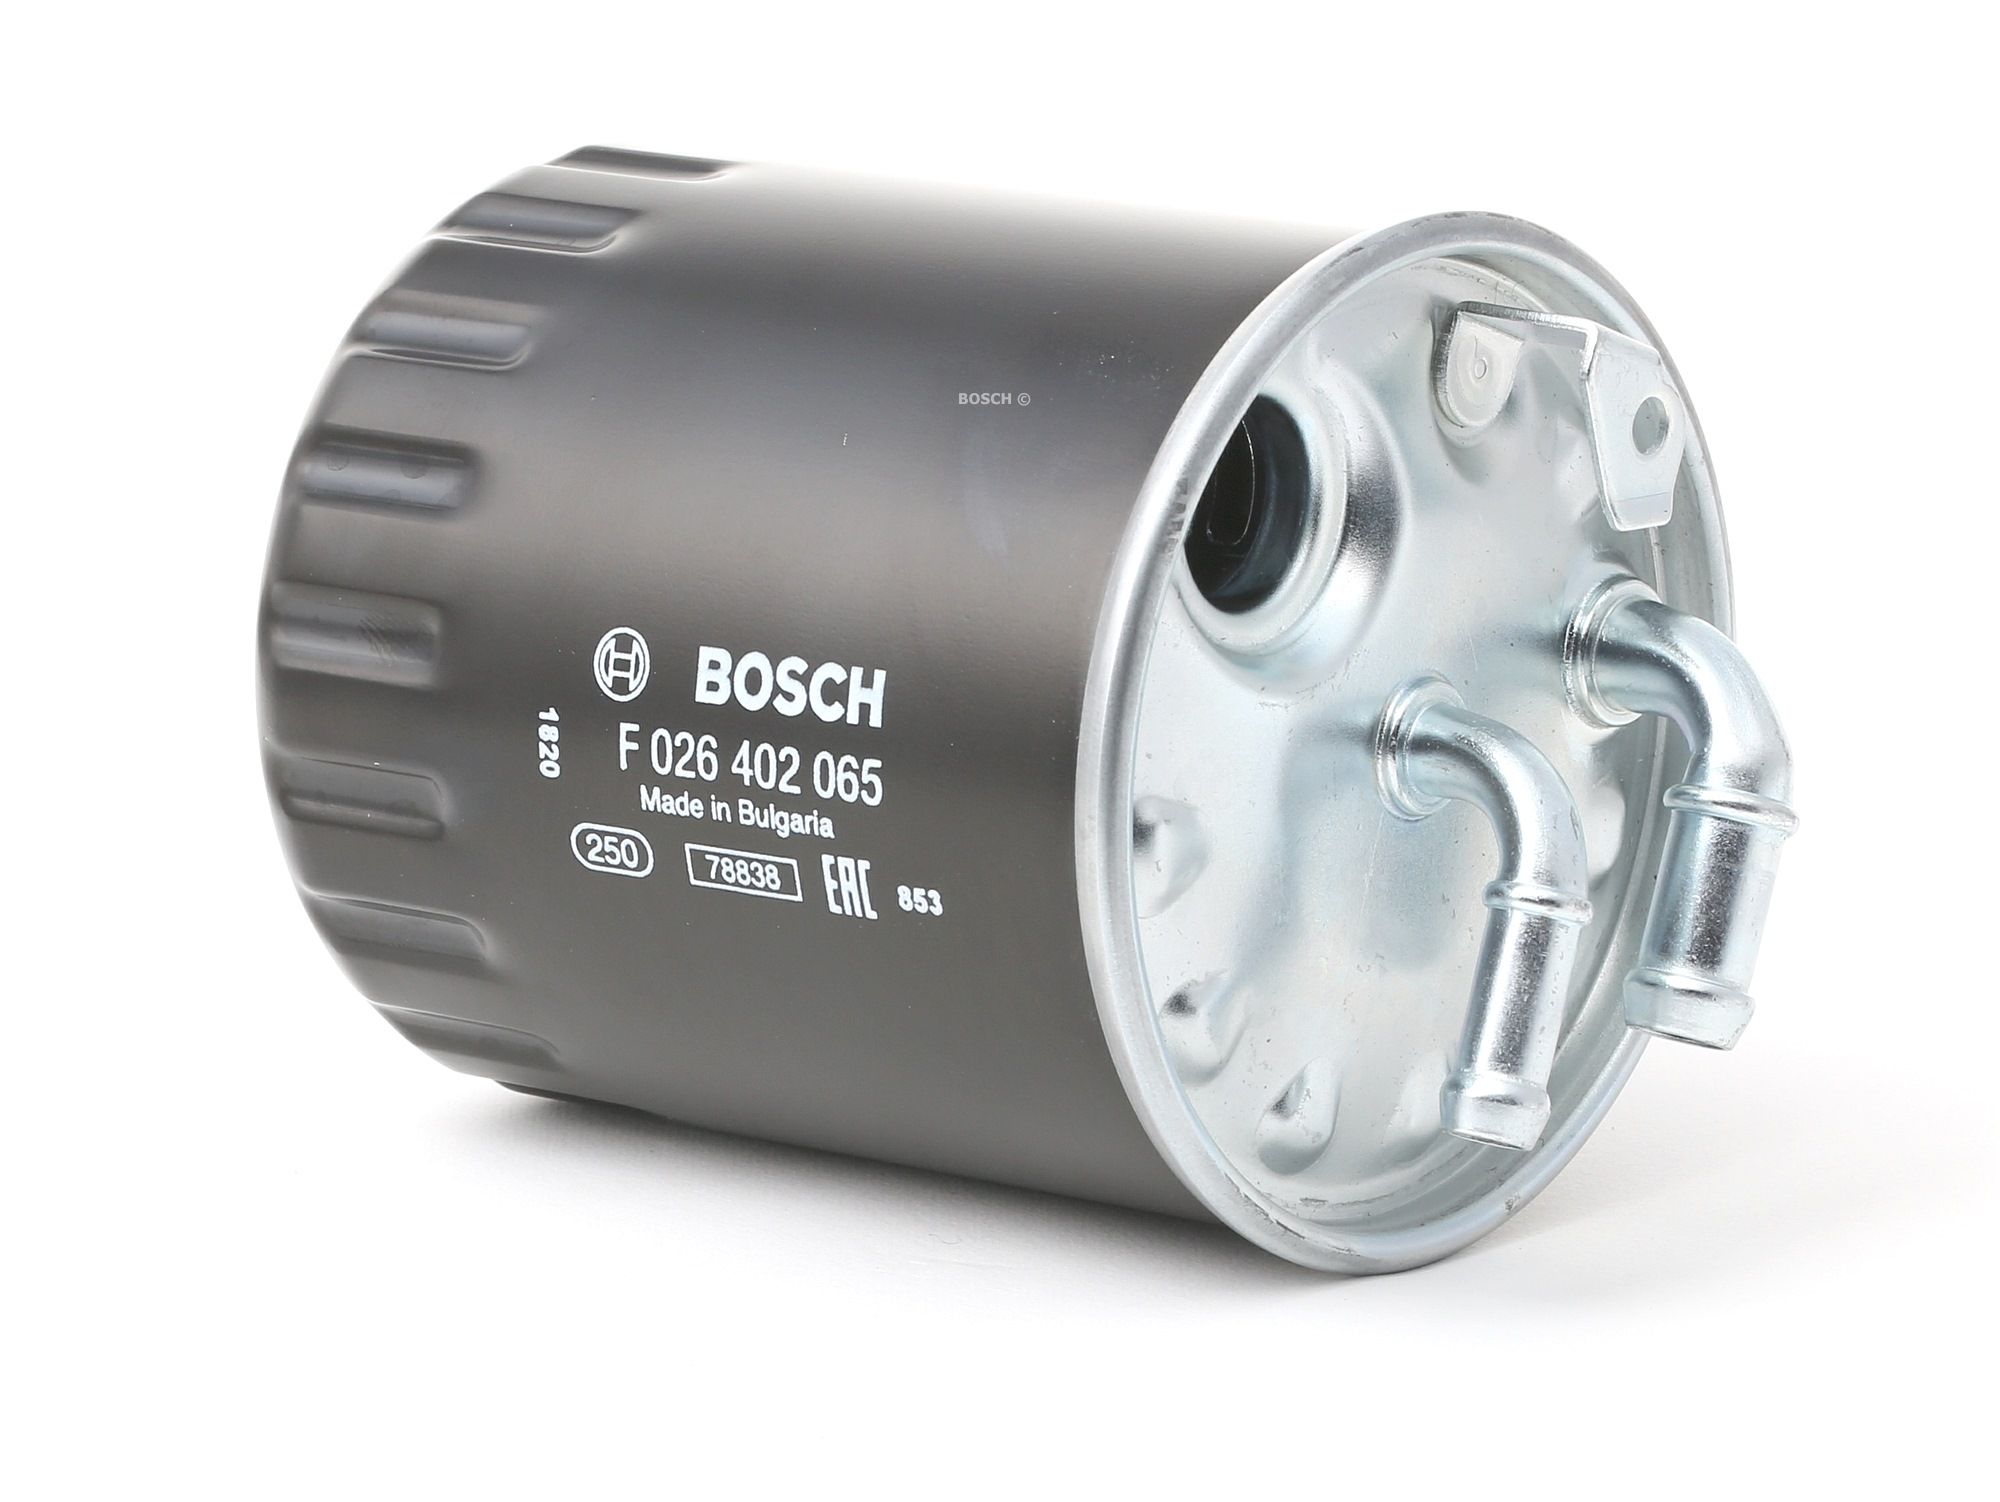 BOSCH F 026 402 065 Palivový filtr Filtr zabudovaný do potrubí Mercedes v originální kvalitě